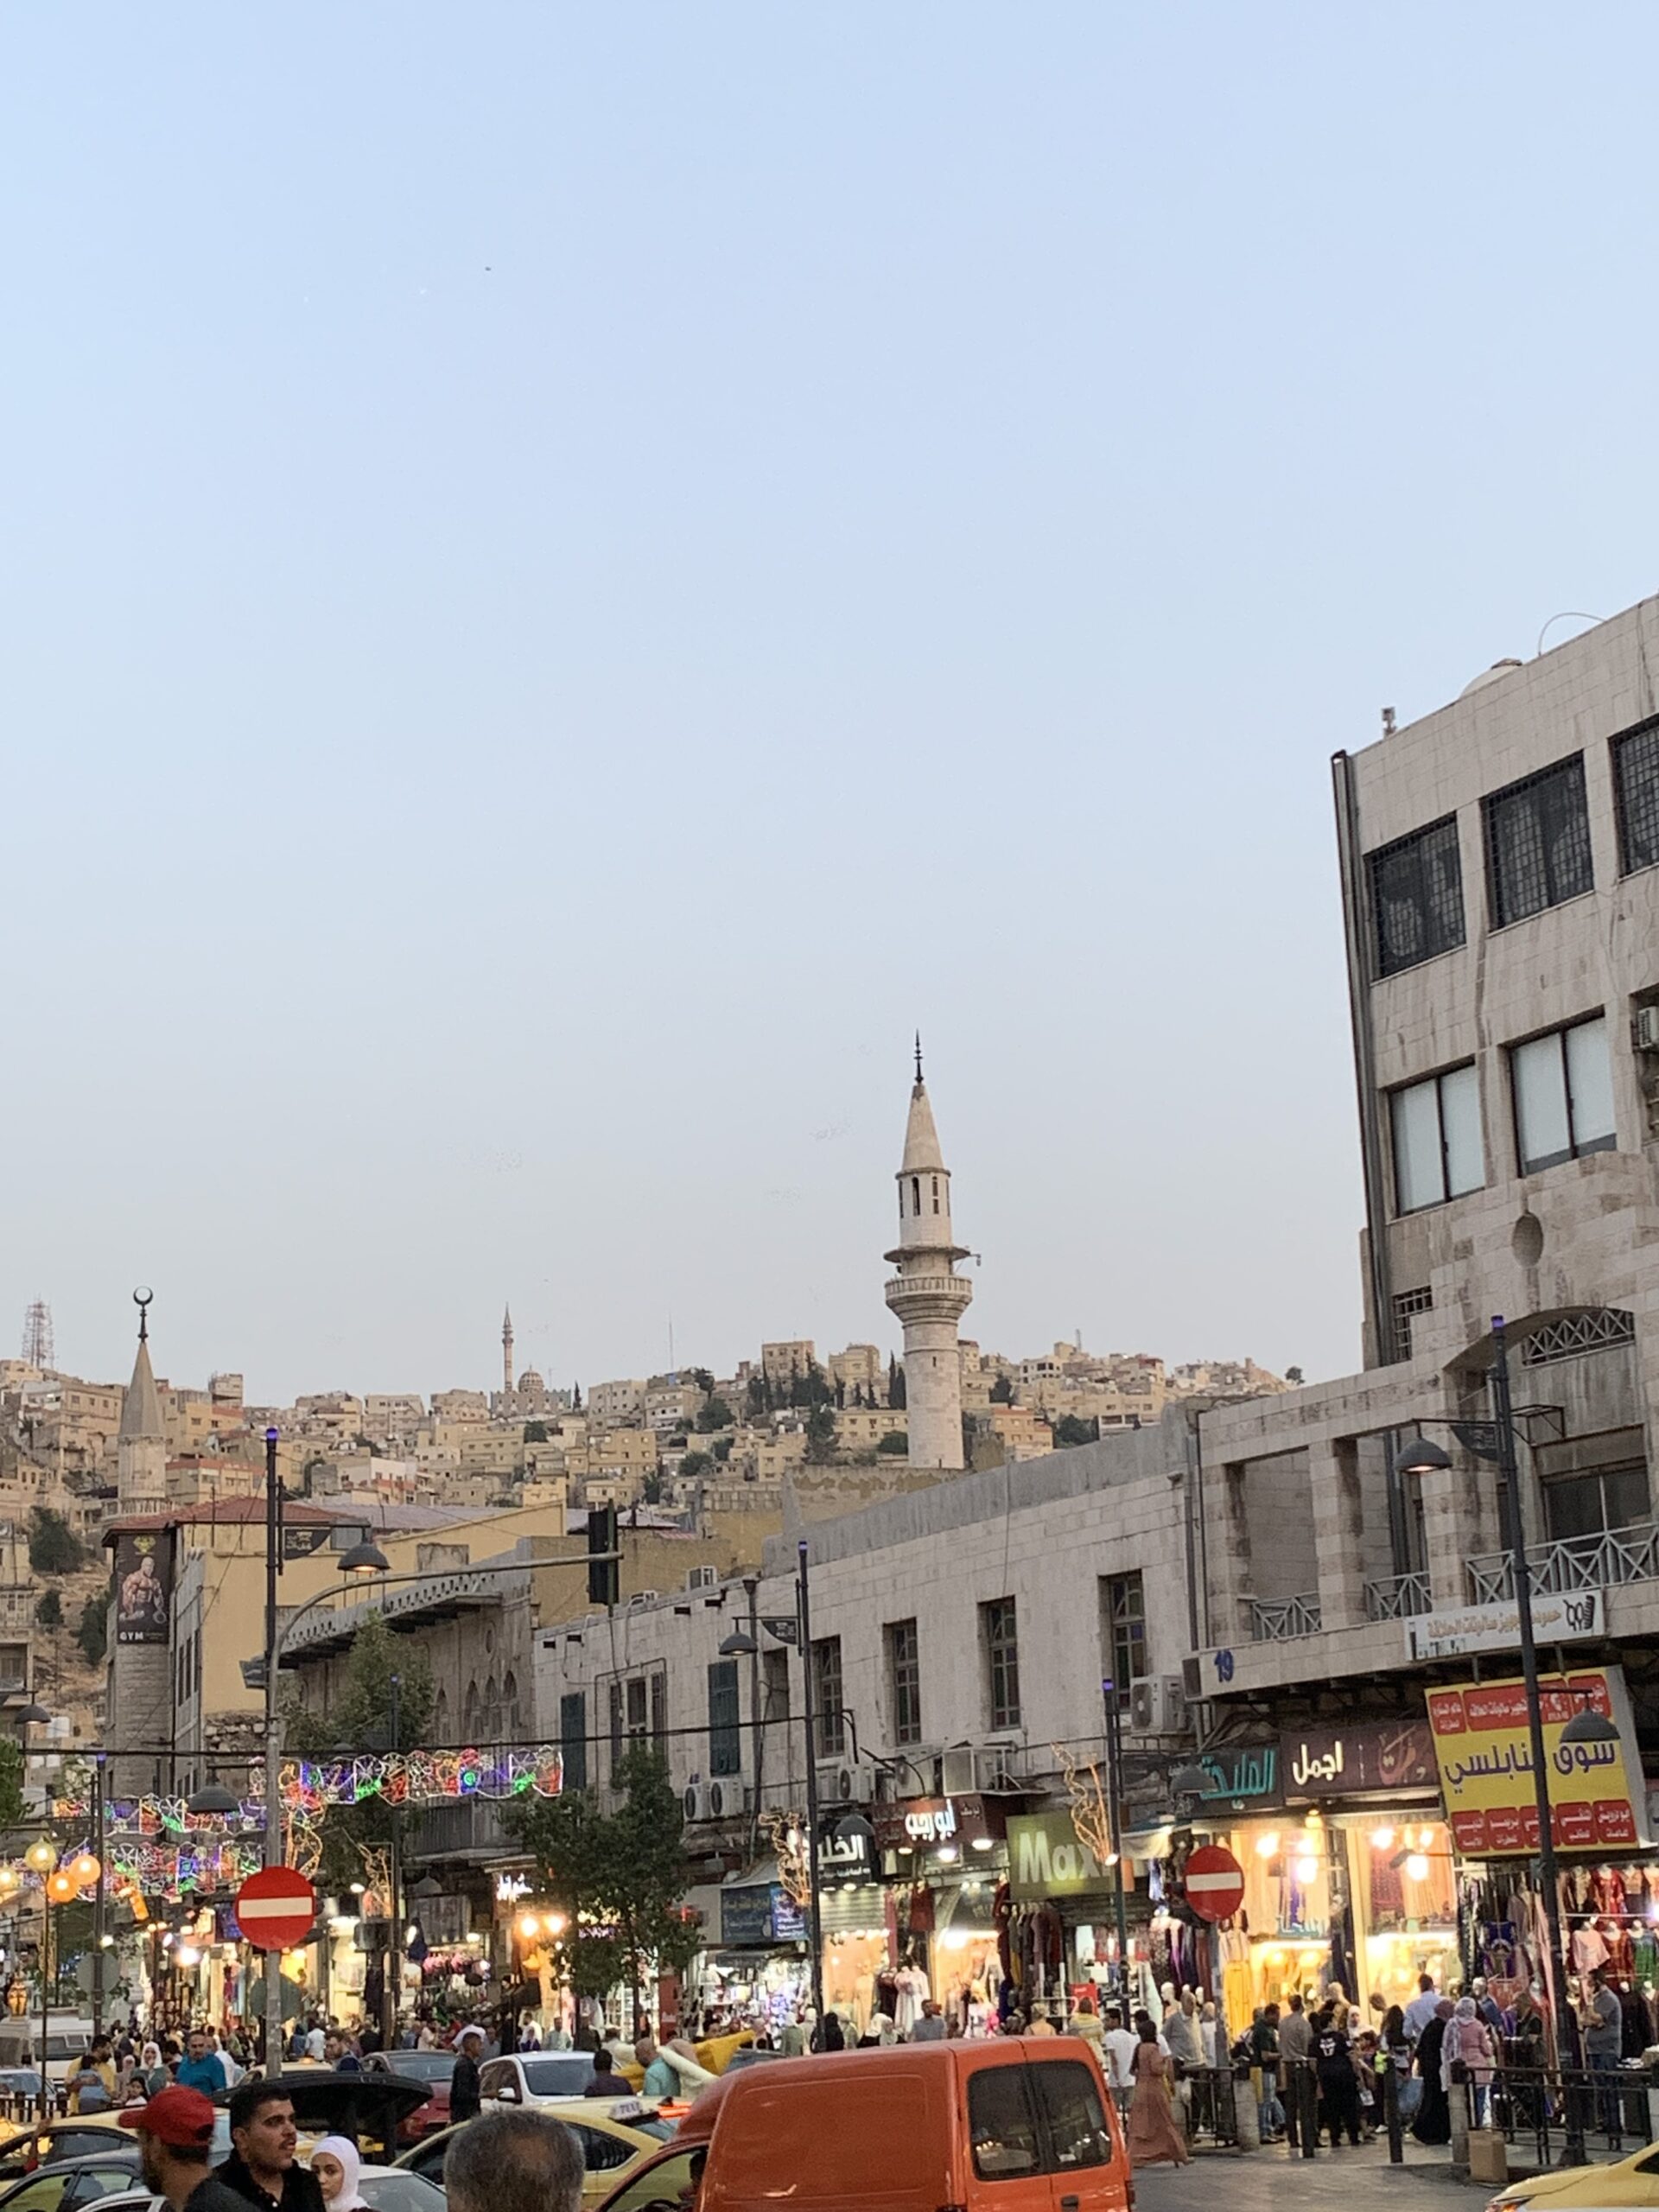 Amman downtown